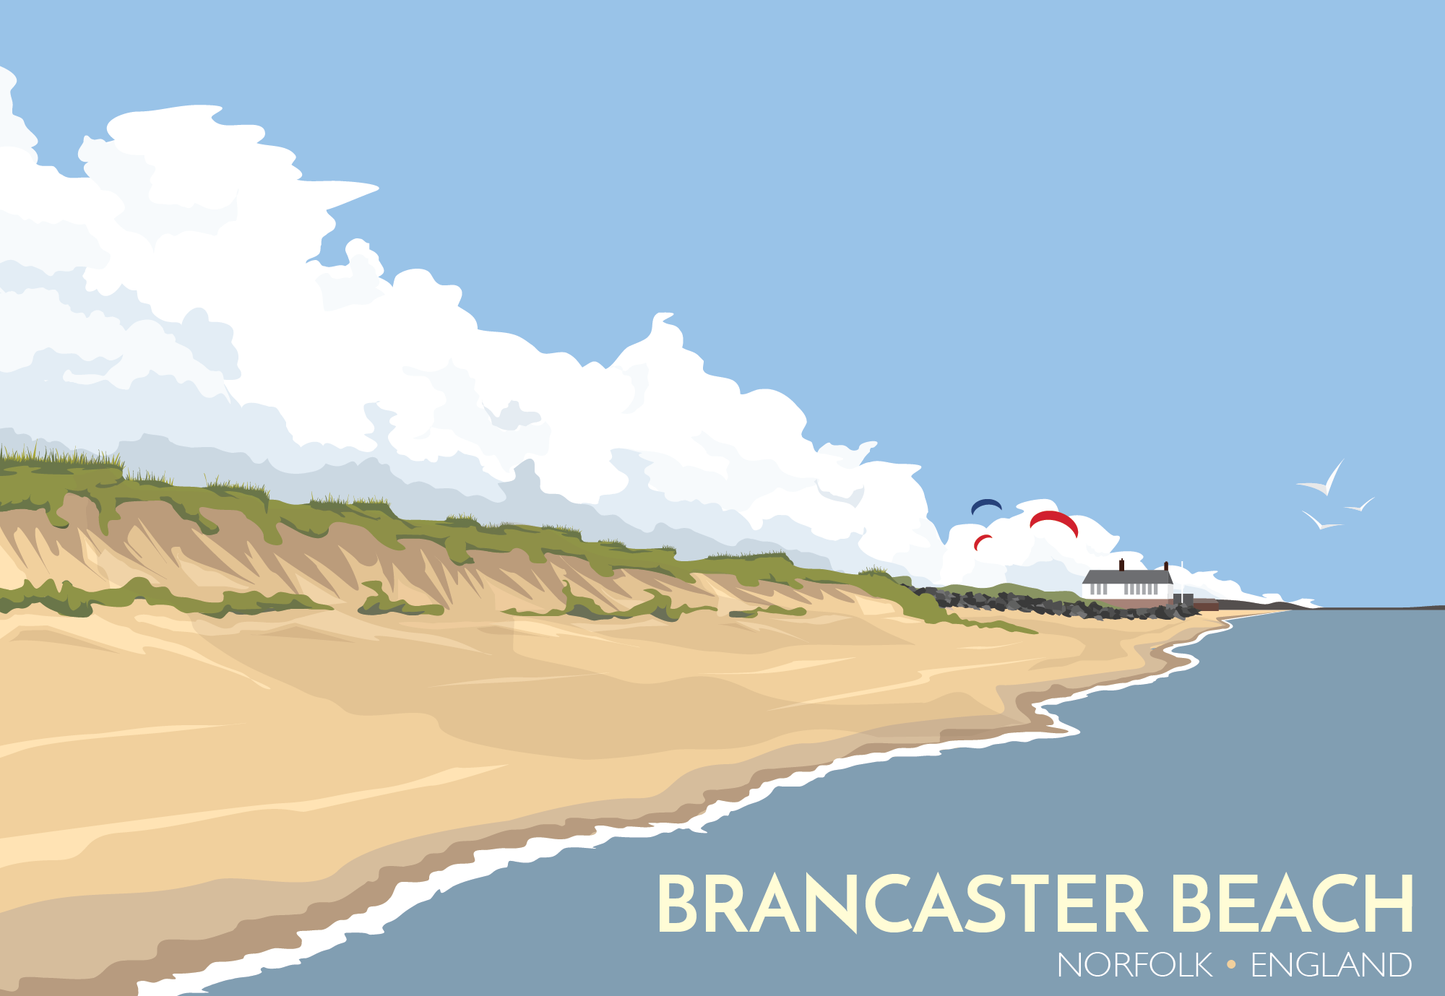 Brancaster Beach Travel Poster